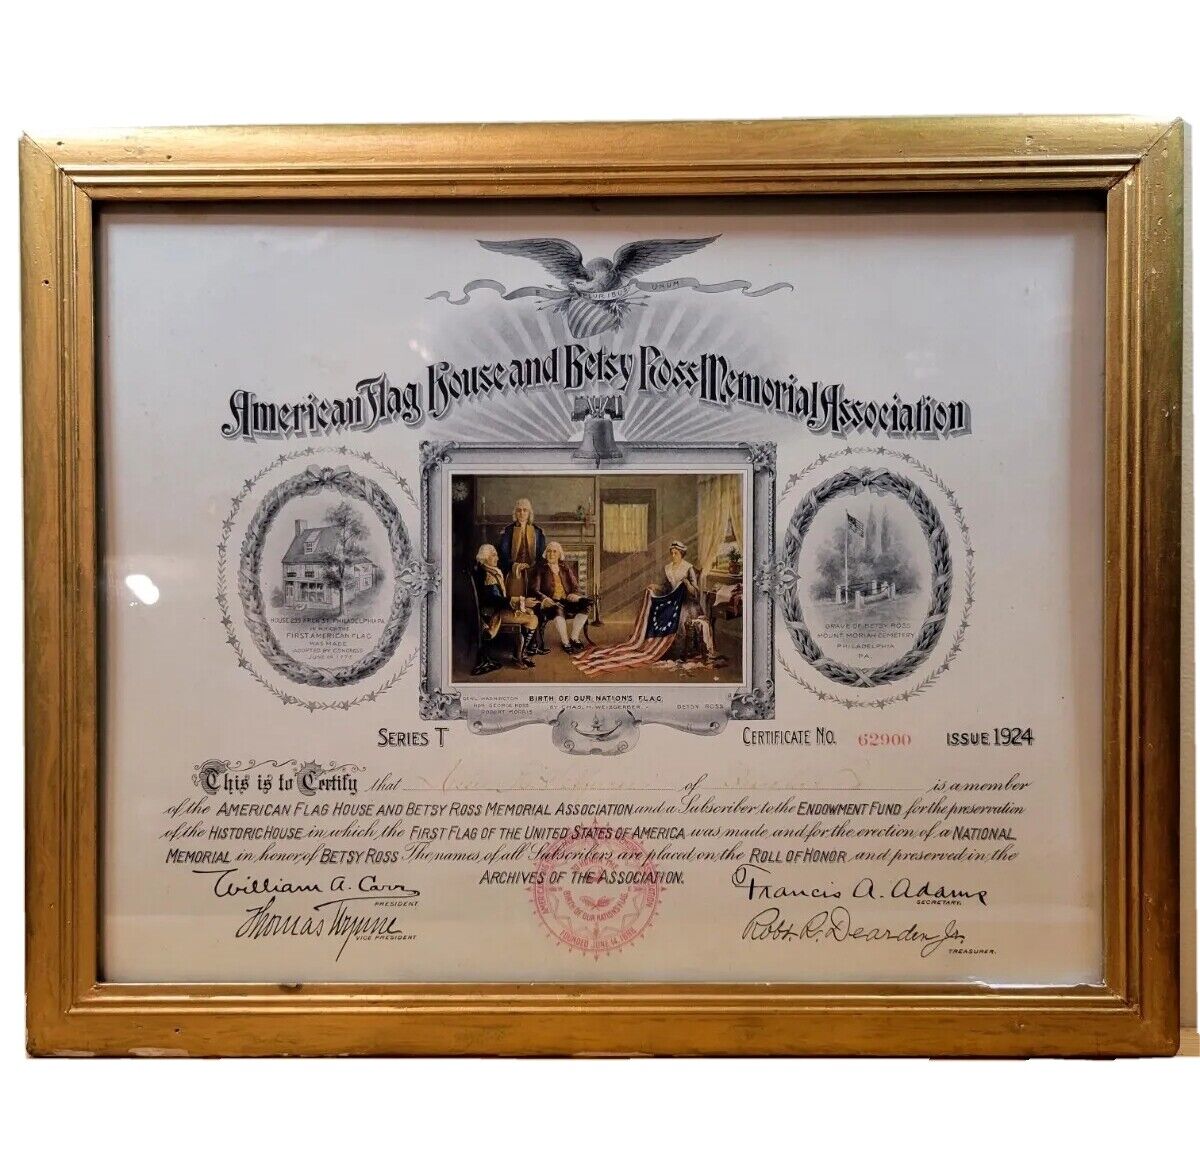 VTG. 1924 American Flag and Betsy Ross Memorial Association Framed Certificate 